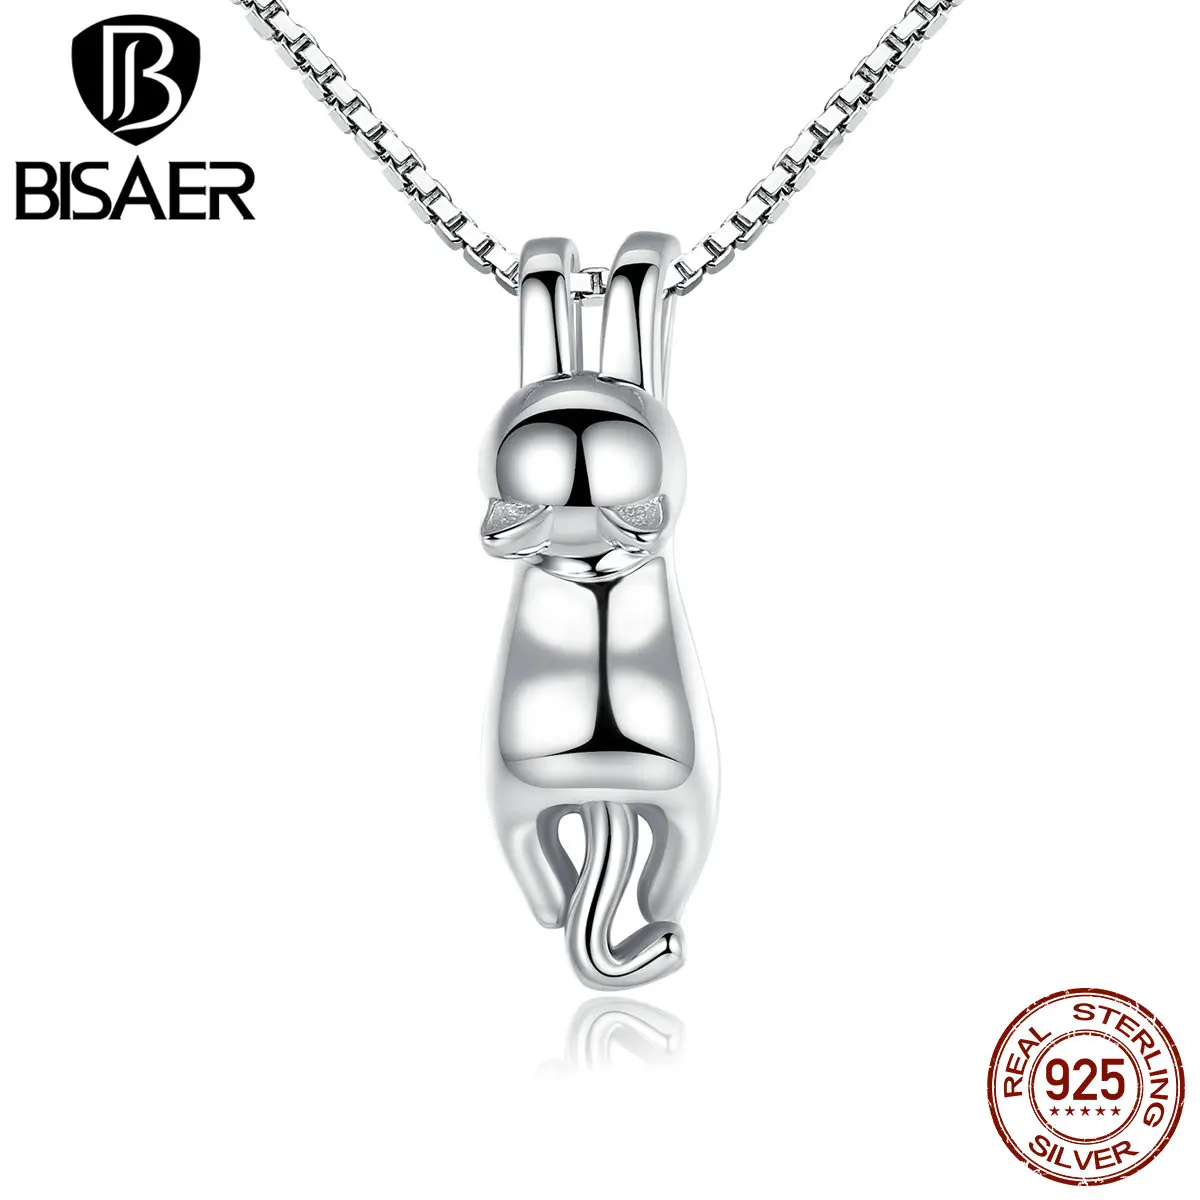 BISAER высокое качество гладкий 925 пробы серебряный прекрасный кот длинный хвост ожерелья и подвески S925 модные украшения HSN032